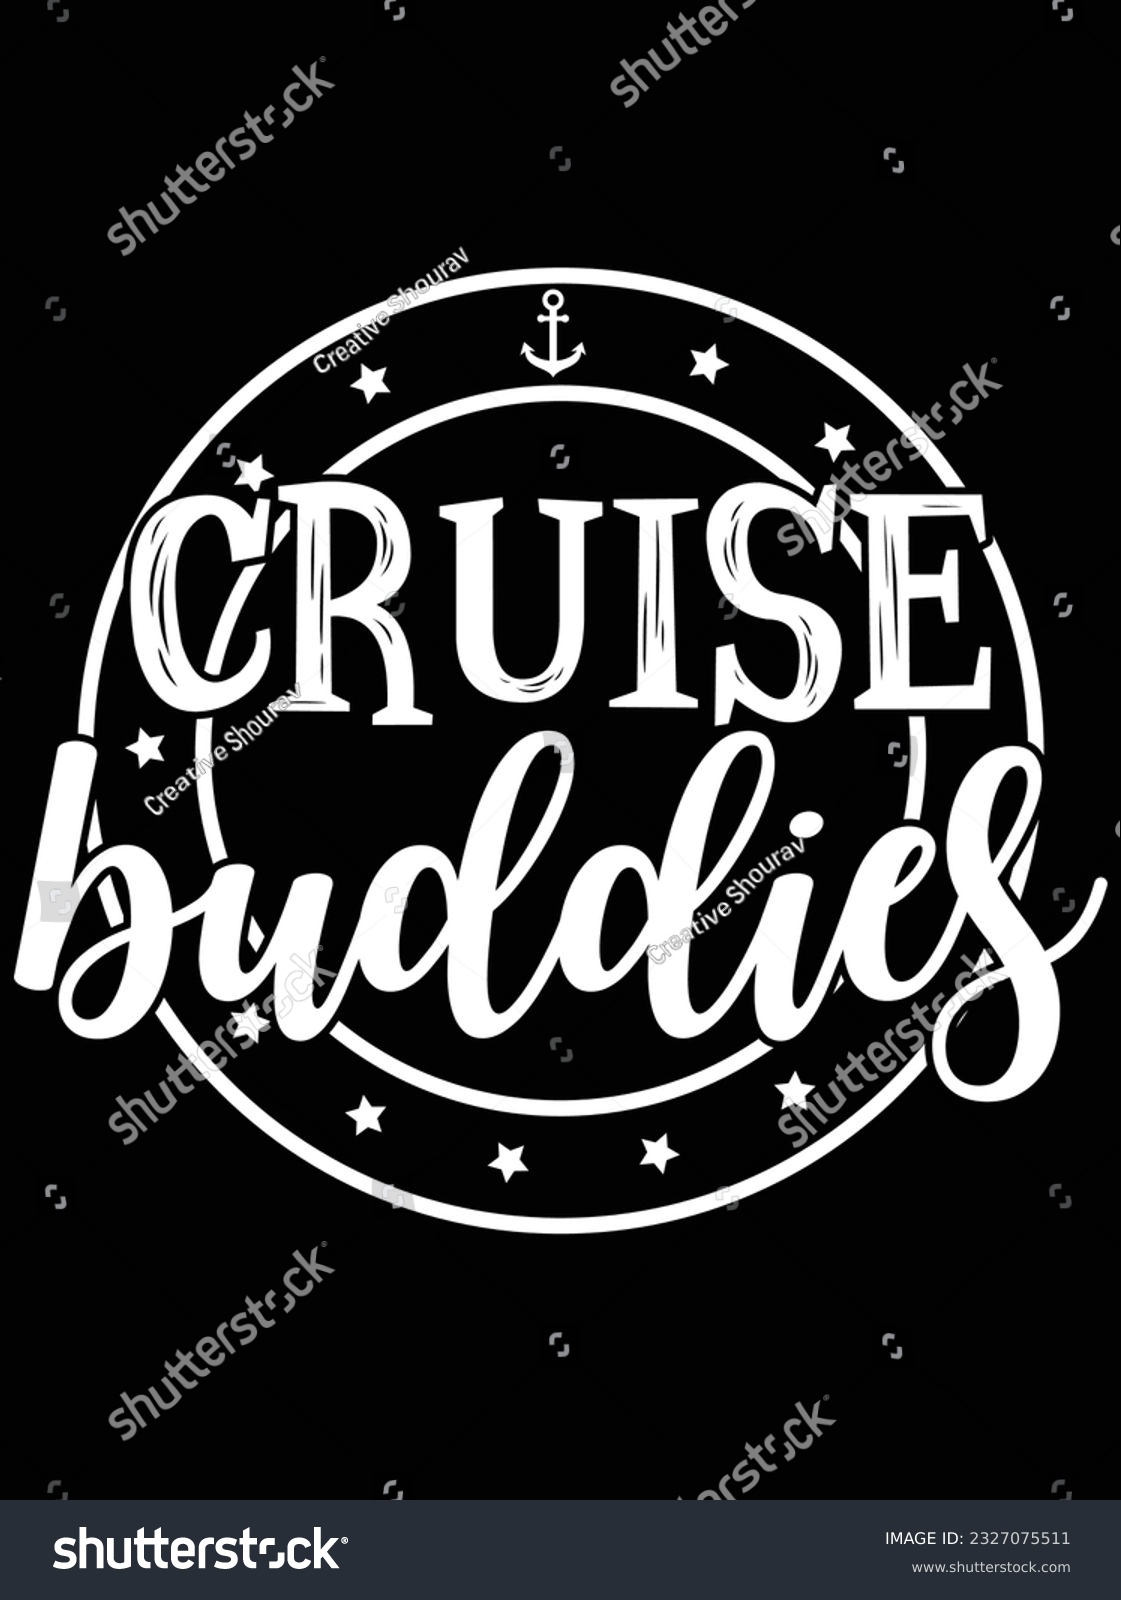 SVG of Cruise buddies vector art design, eps file. design file for t-shirt. SVG, EPS cuttable design file svg